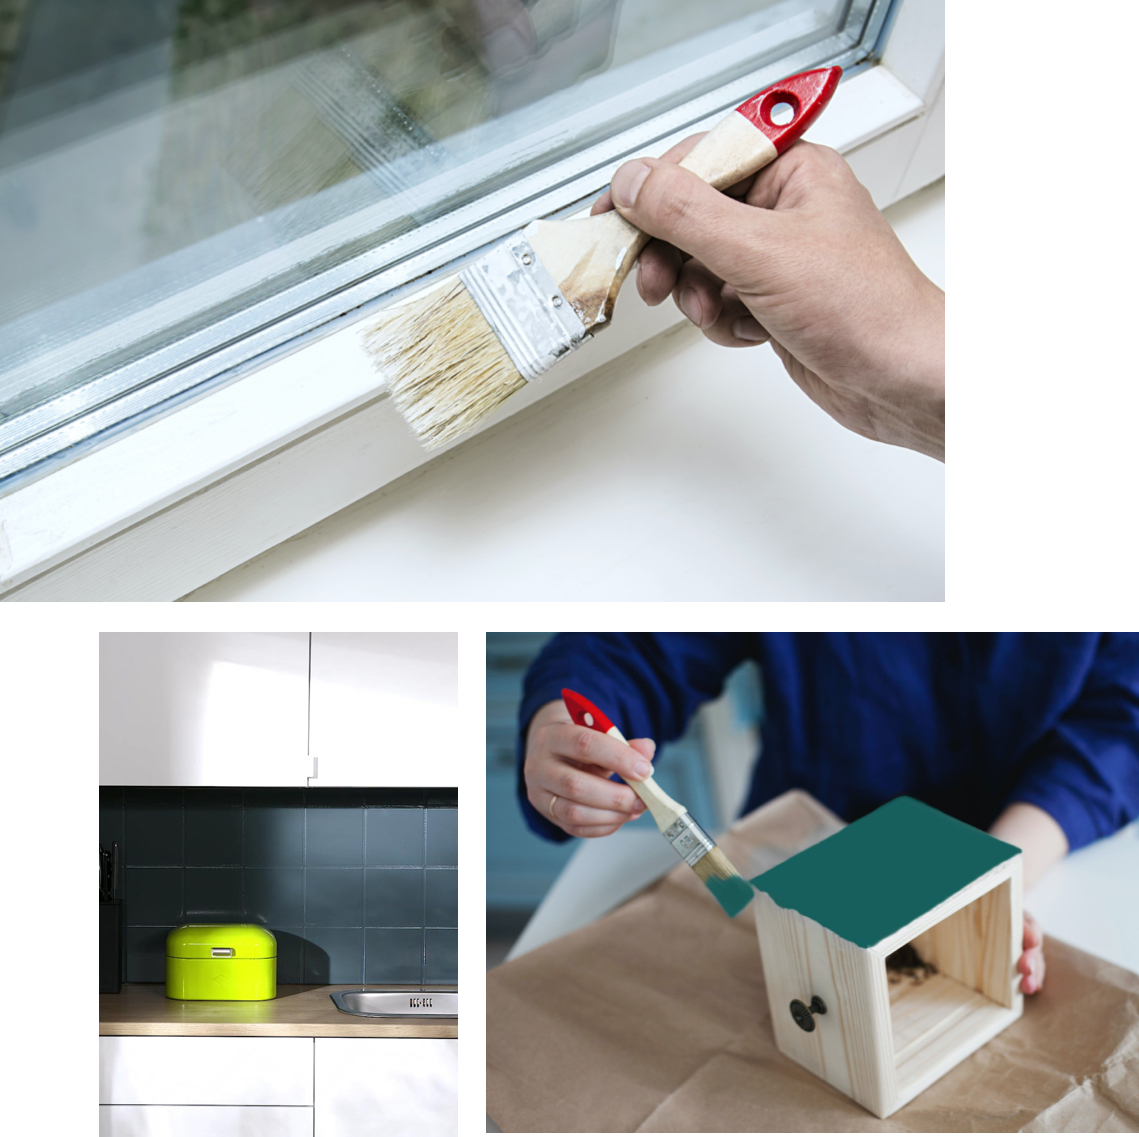 Anwendungen für SCHÖNER-WOHNE-Farbe pep-up Renovierfarben für Fensterrahmen, Fliesen und Möbel 